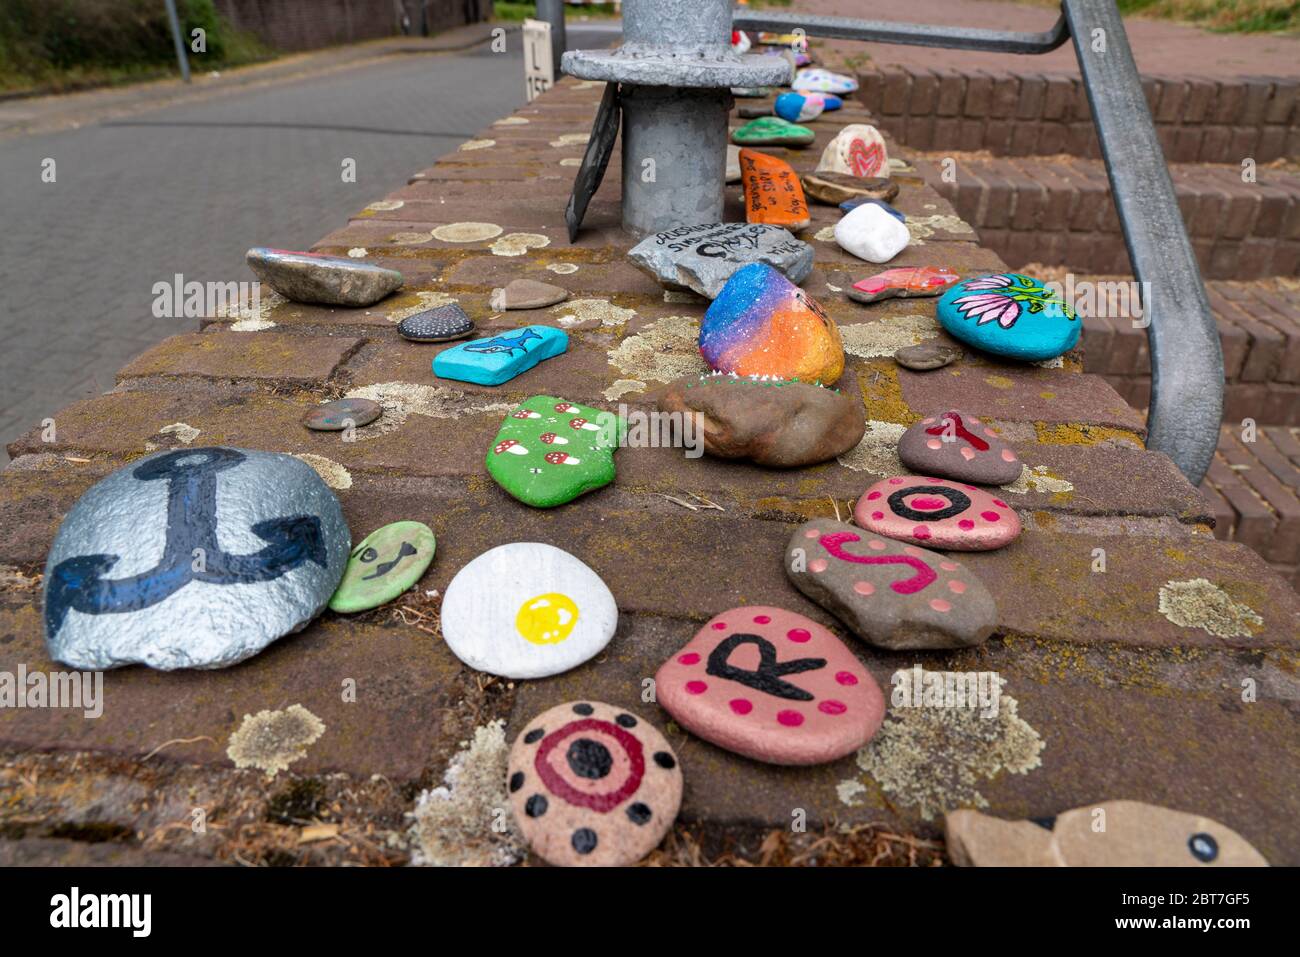 Bemalte Steine auf einer Mauer in Duisburg-Orsoy, s.g. Corona-Steine, Steinschlangen, die meist Kinder bemalen und zu einer Reihe zusammen legen, Akti Stock Photo